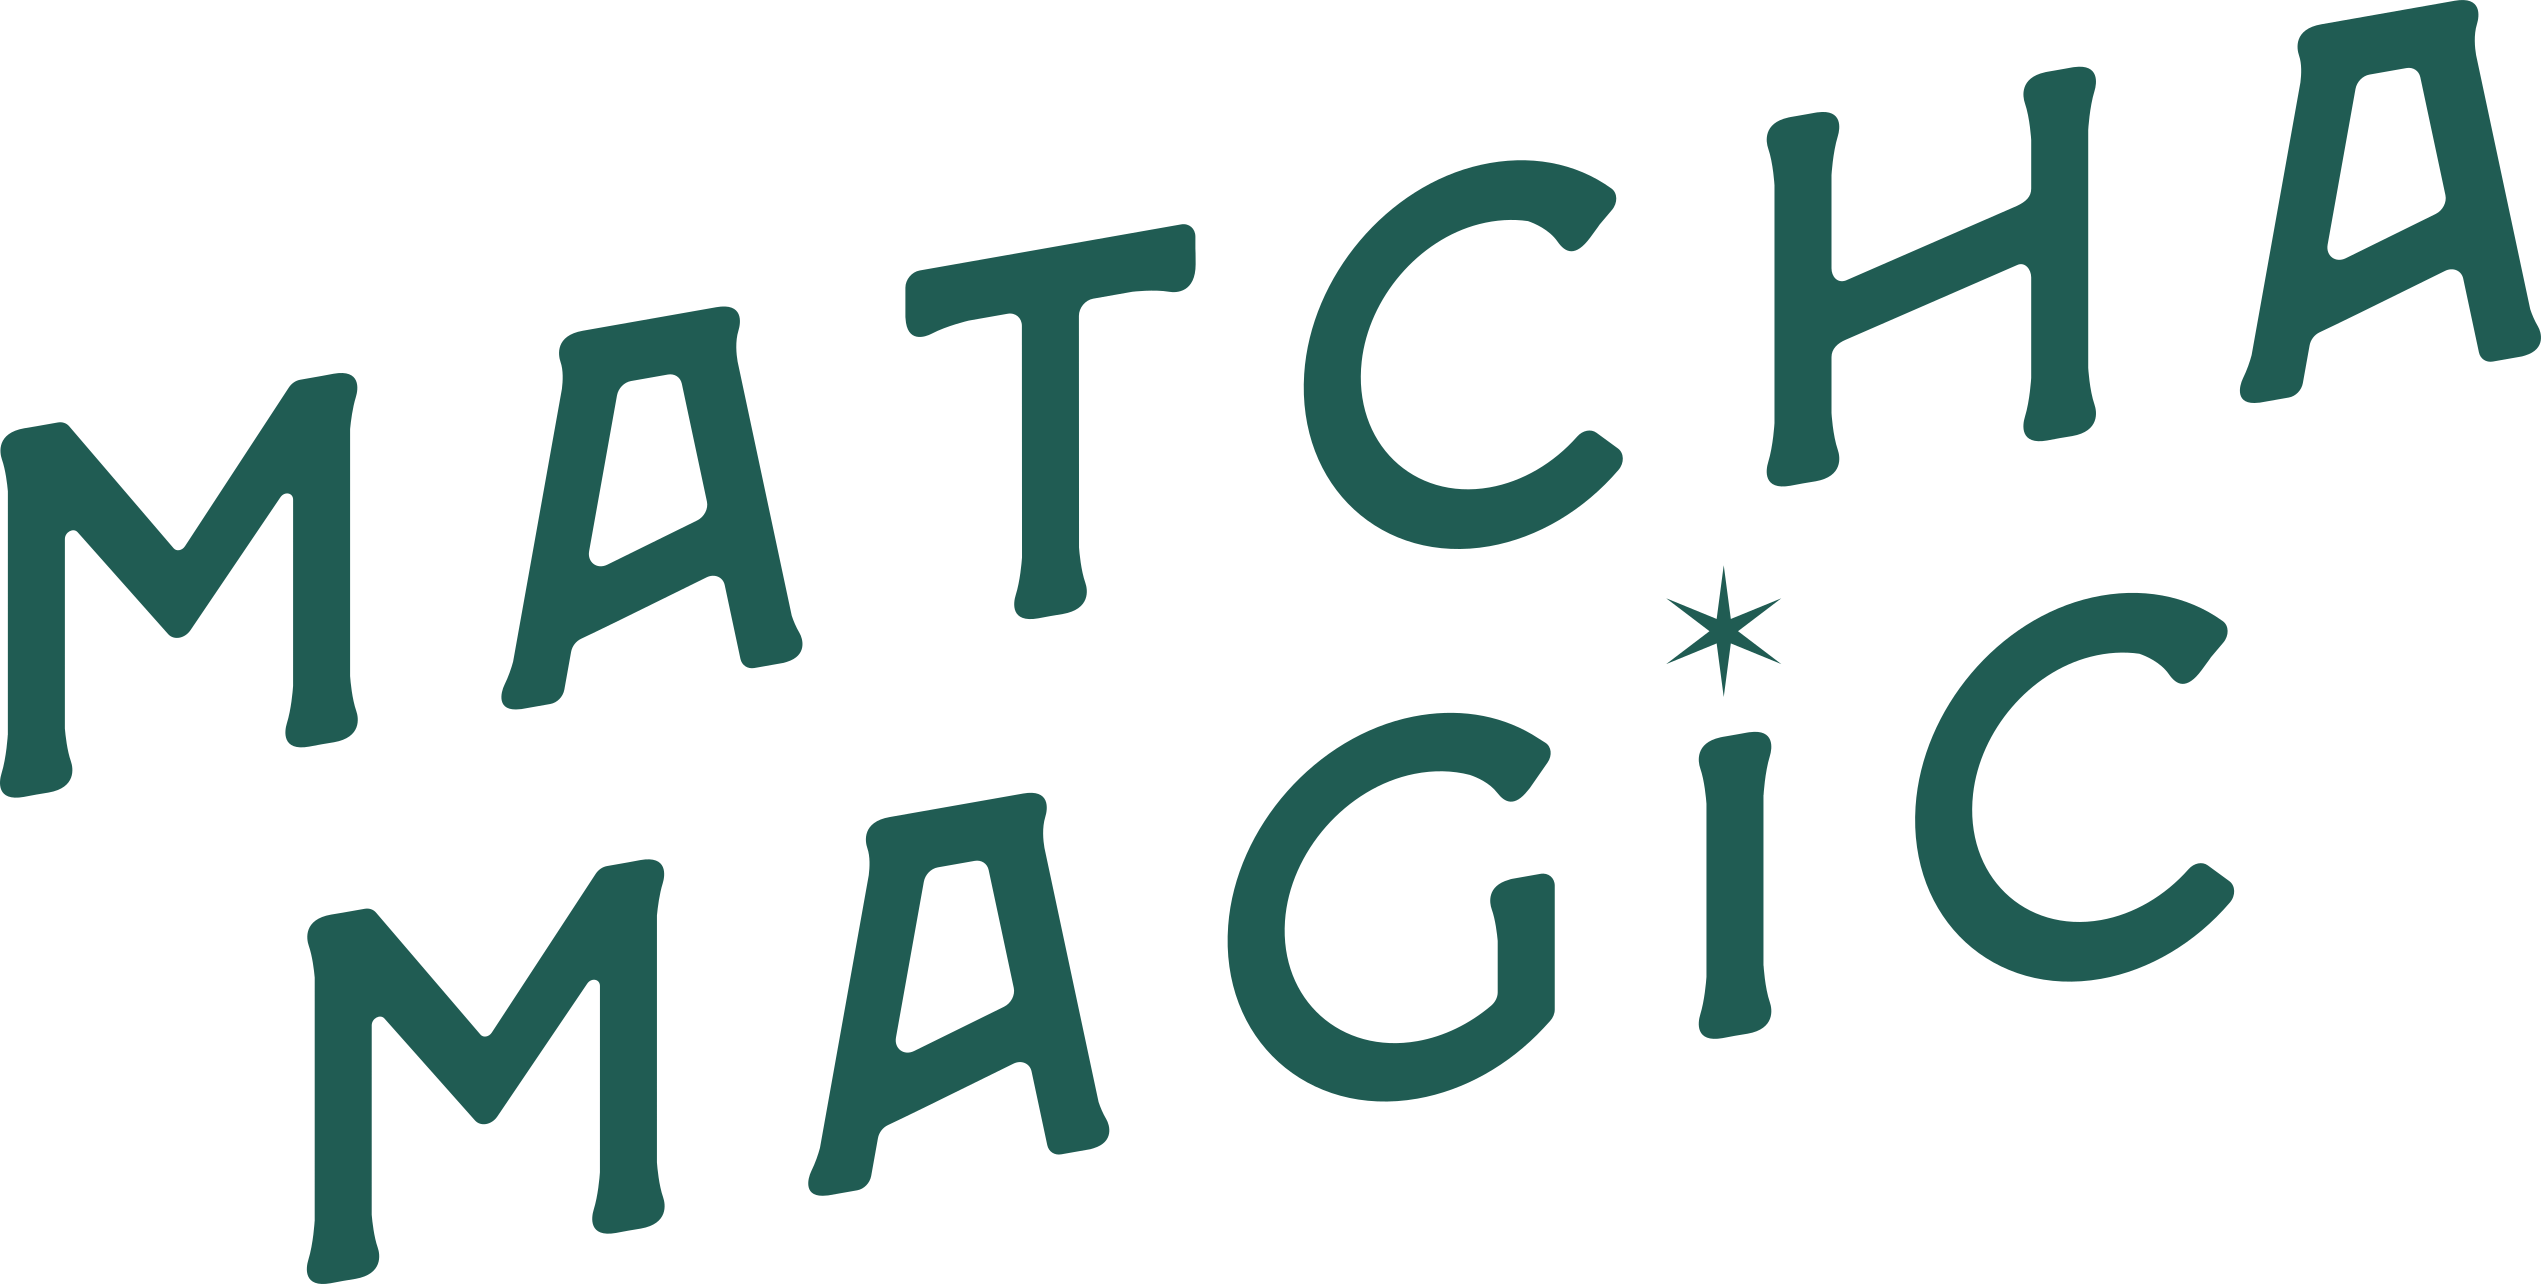 Matcha Magic Home